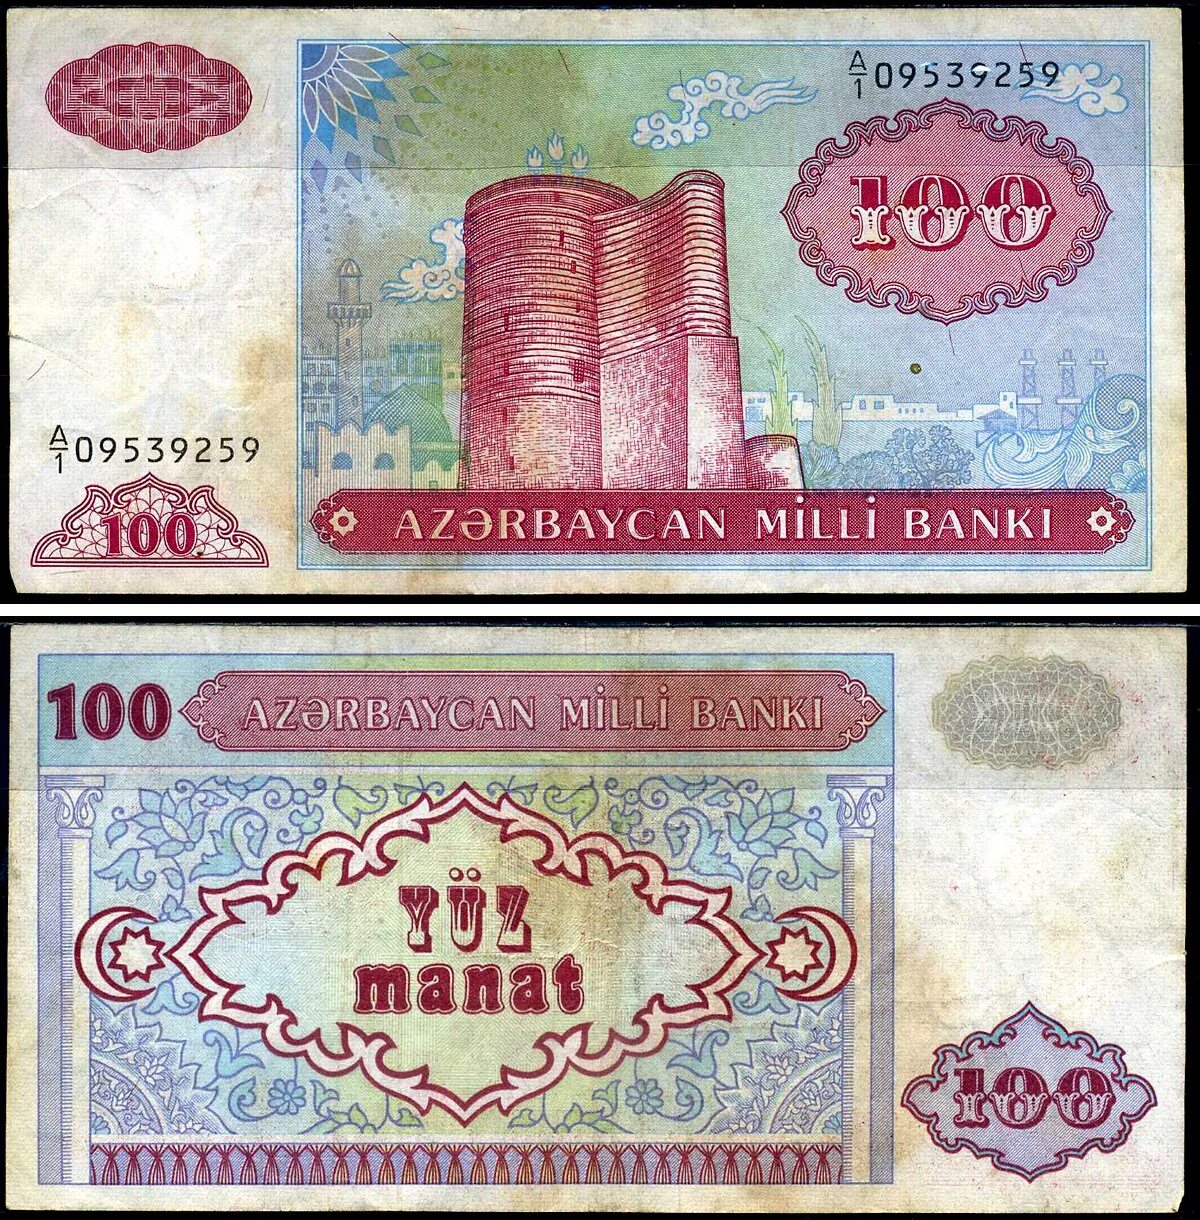 100 Манат Азербайджан. 100 Рублей Азербайджан манат. Купюра 1000 манат Азербайджана. 100 Манат 1993 года. 1 манат в долларах